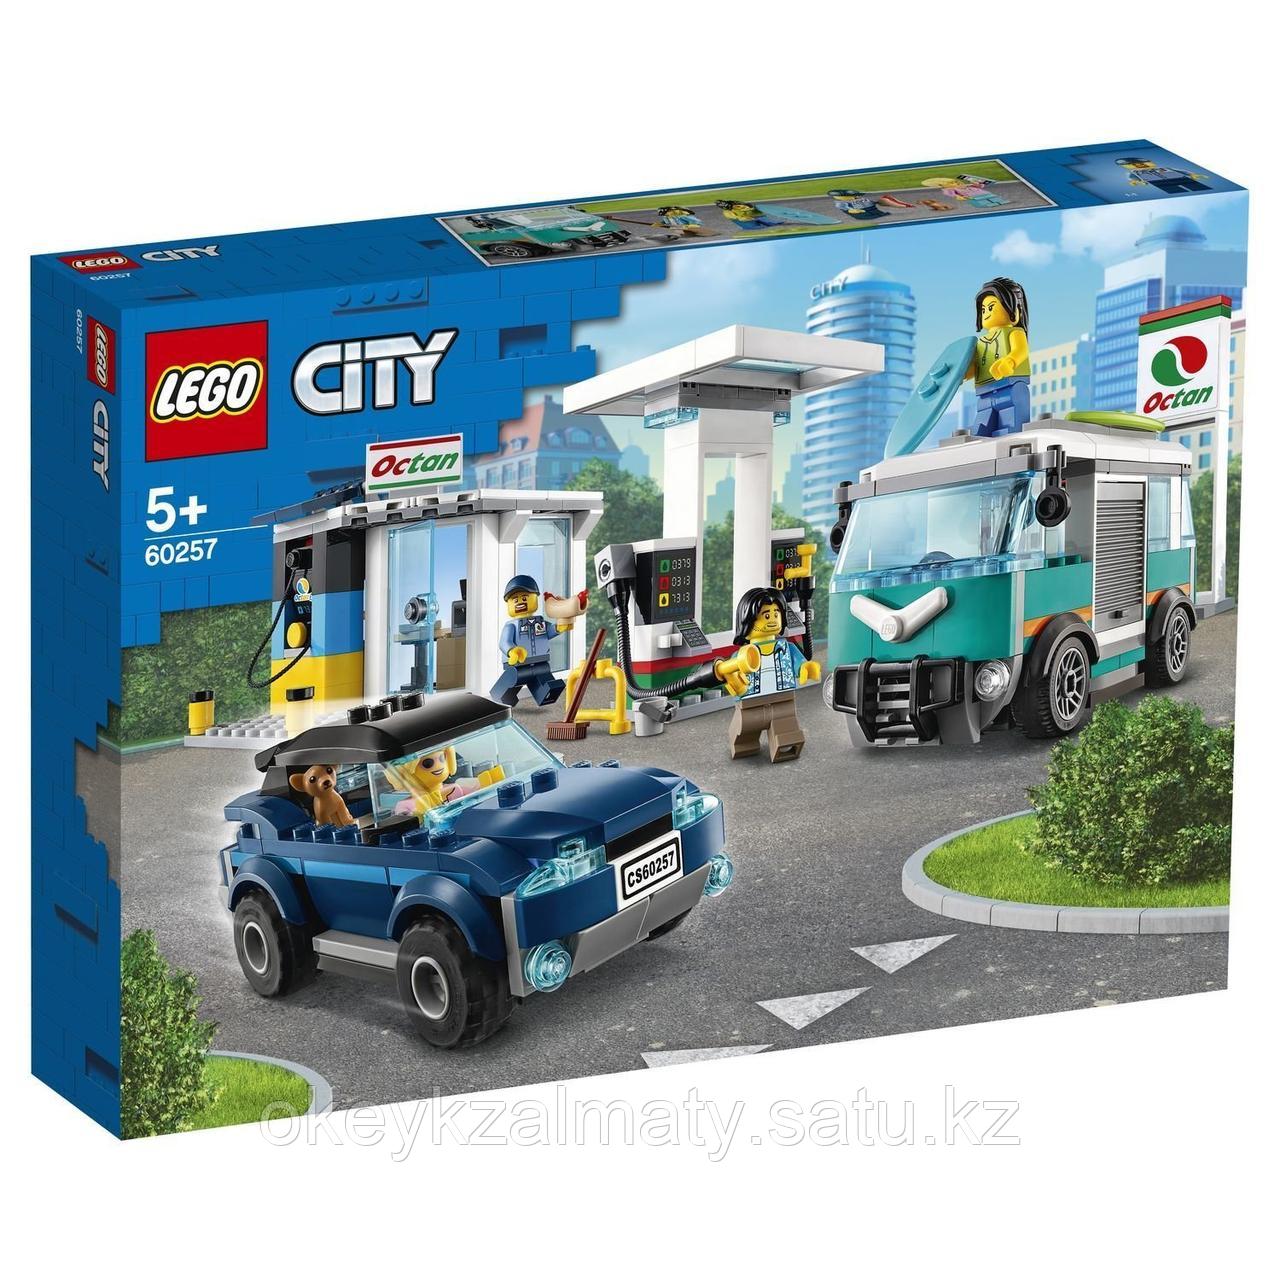 LEGO City: Станция технического обслуживания 60257